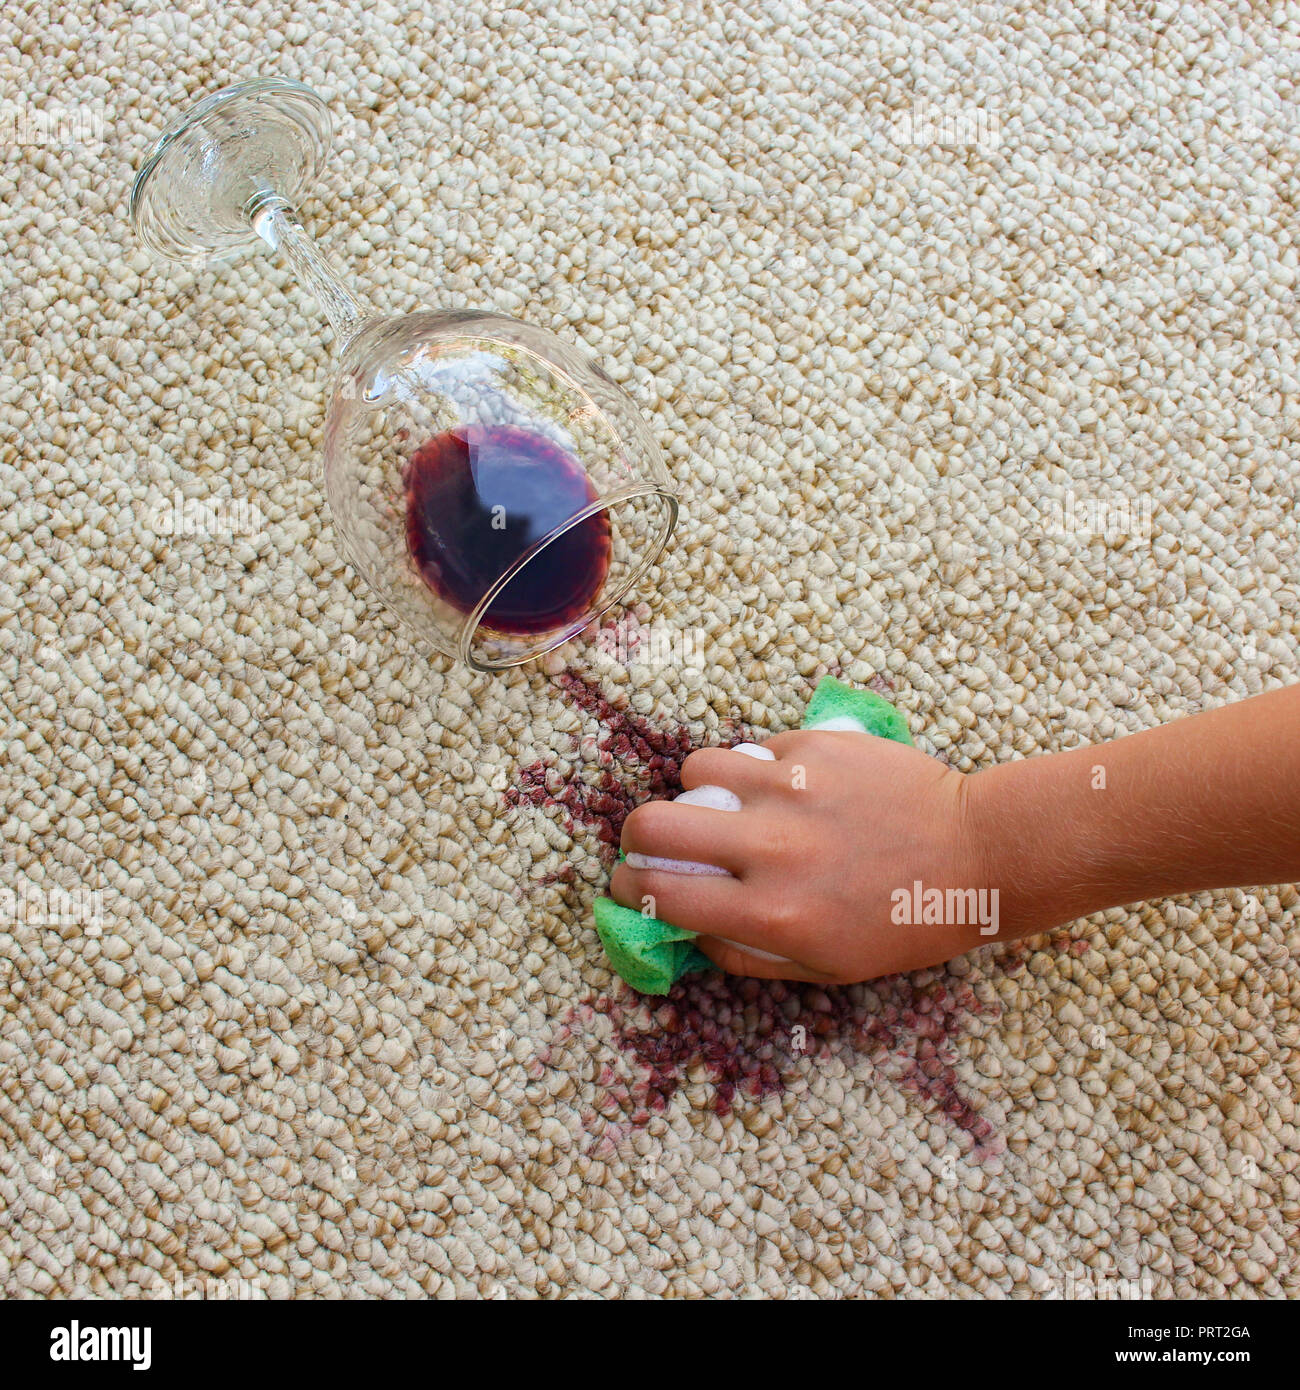 Verre de vin rouge est tombé sur un tapis, le vin renversé sur le tapis. La  main de femme nettoie les tapis avec une éponge et un détergent Photo Stock  - Alamy